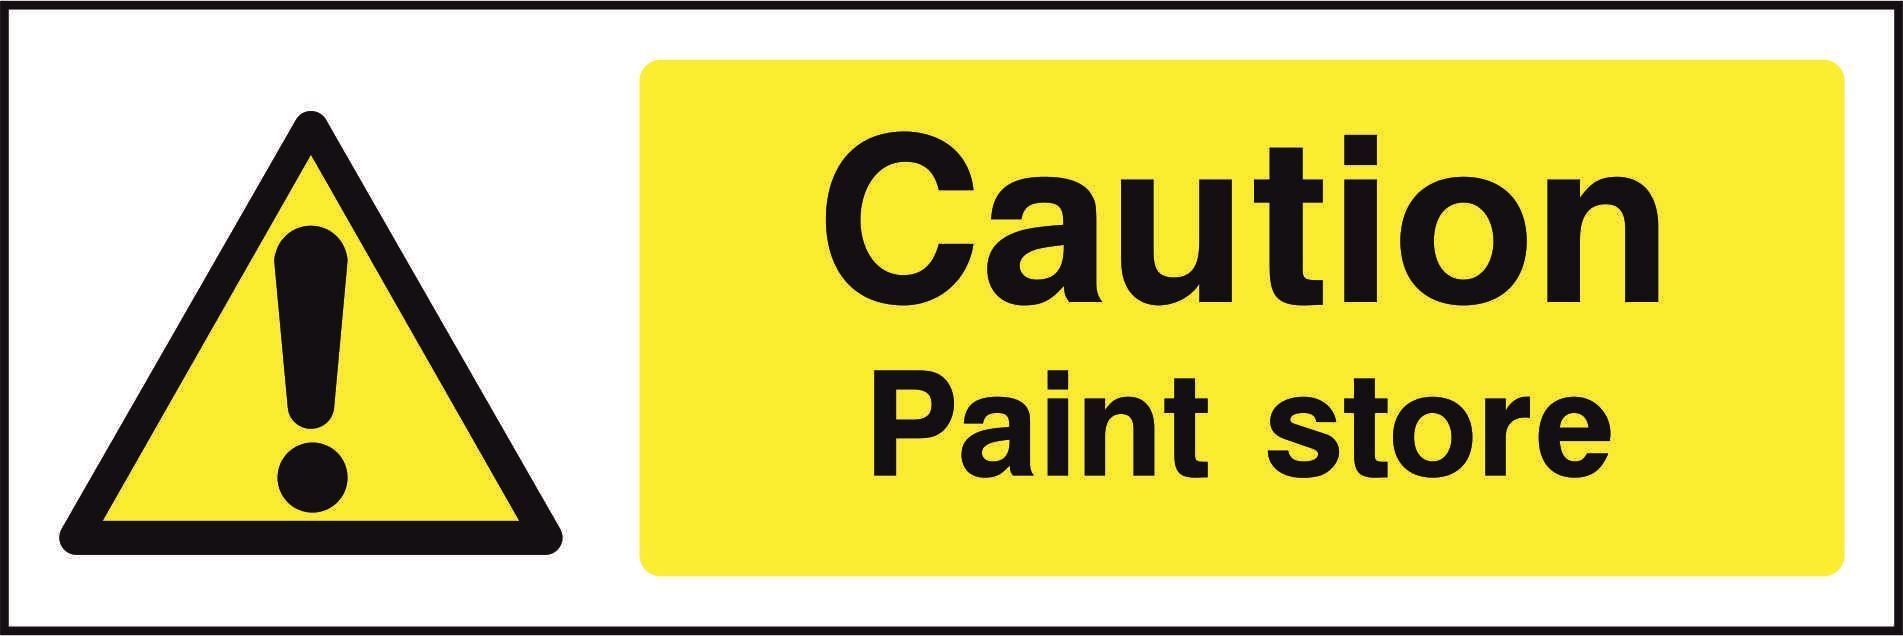 Caution Paint store